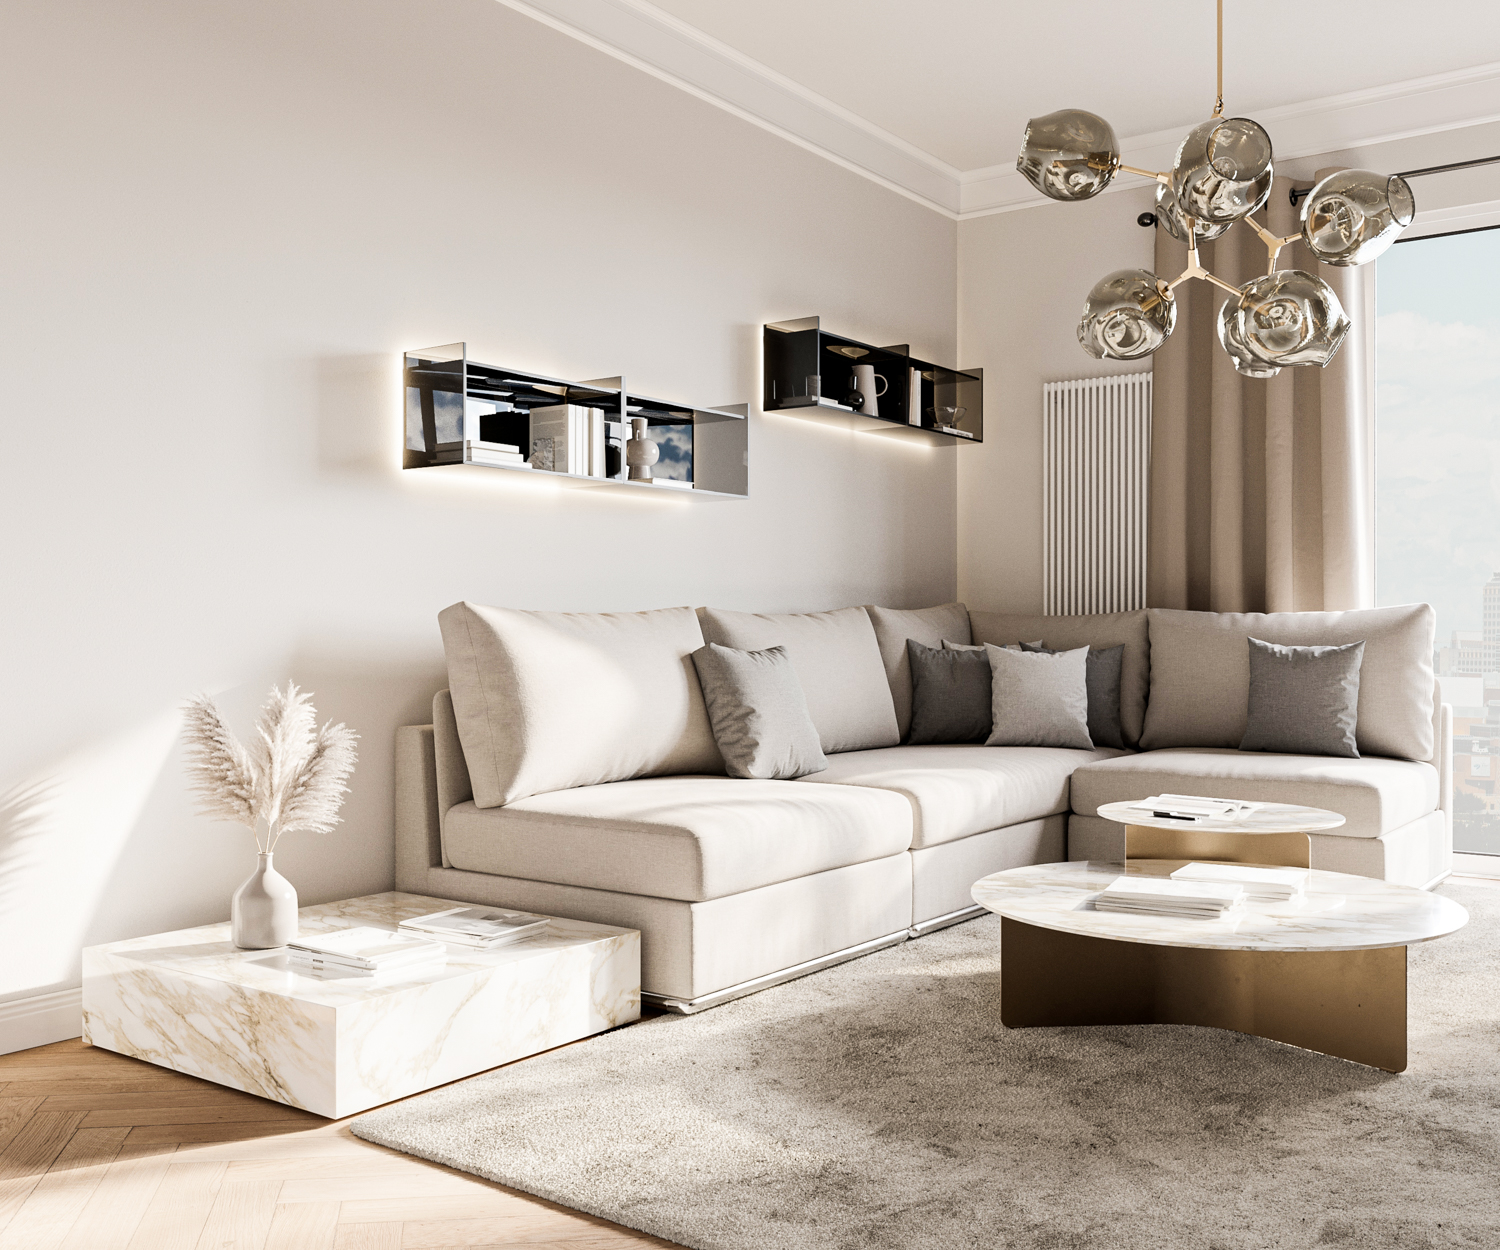 Designer Wandregal aus Glas von Livitalia im Wohnzimmer über Sofagruppe